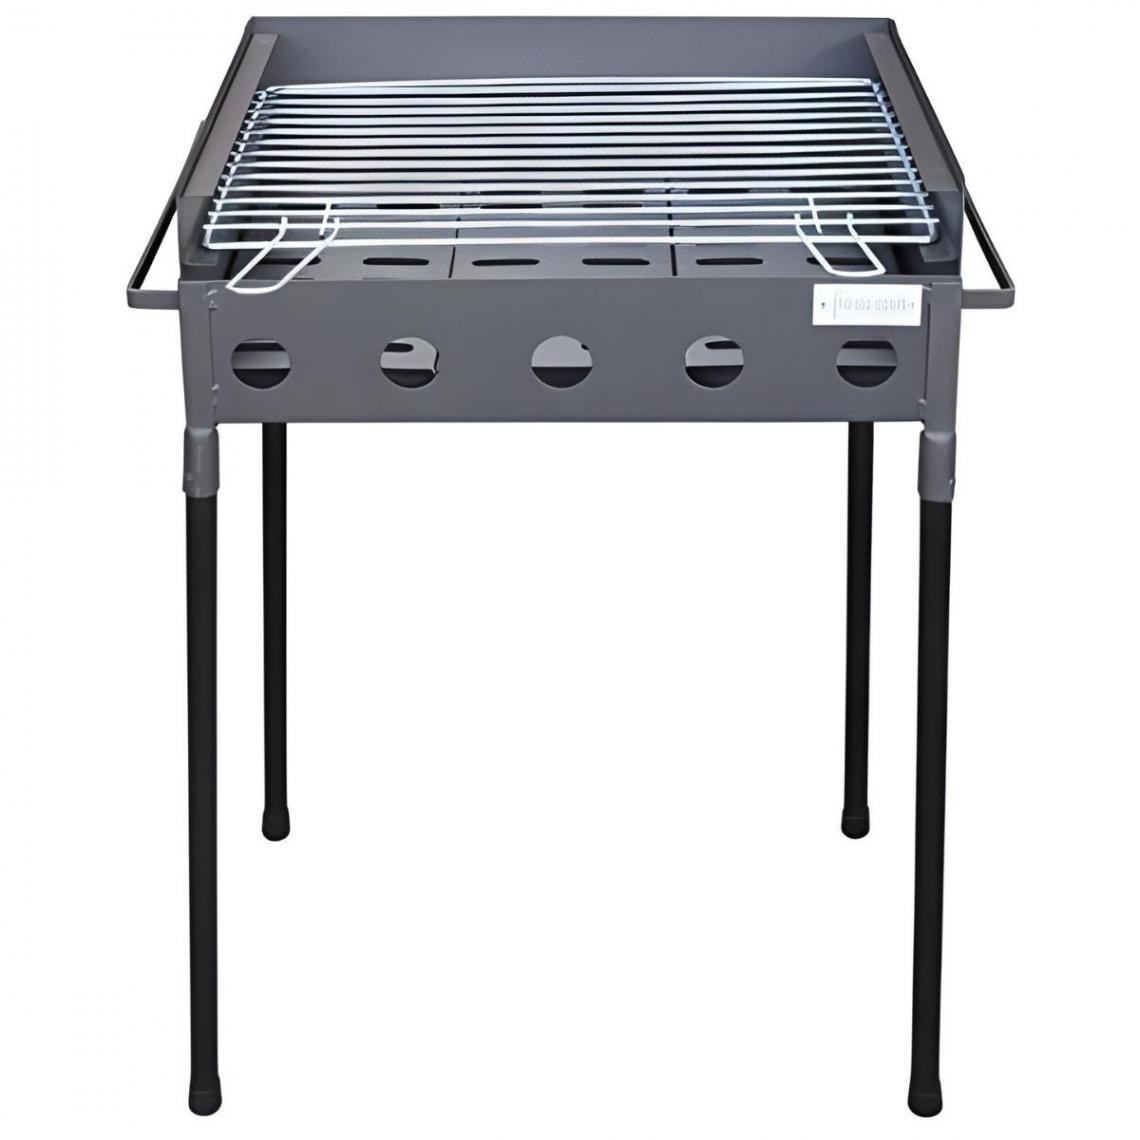 Visiodirect - Barbecue Double hauteur en Zinc coloris Gris - 51 x 33 x 62 cm - Barbecues charbon de bois